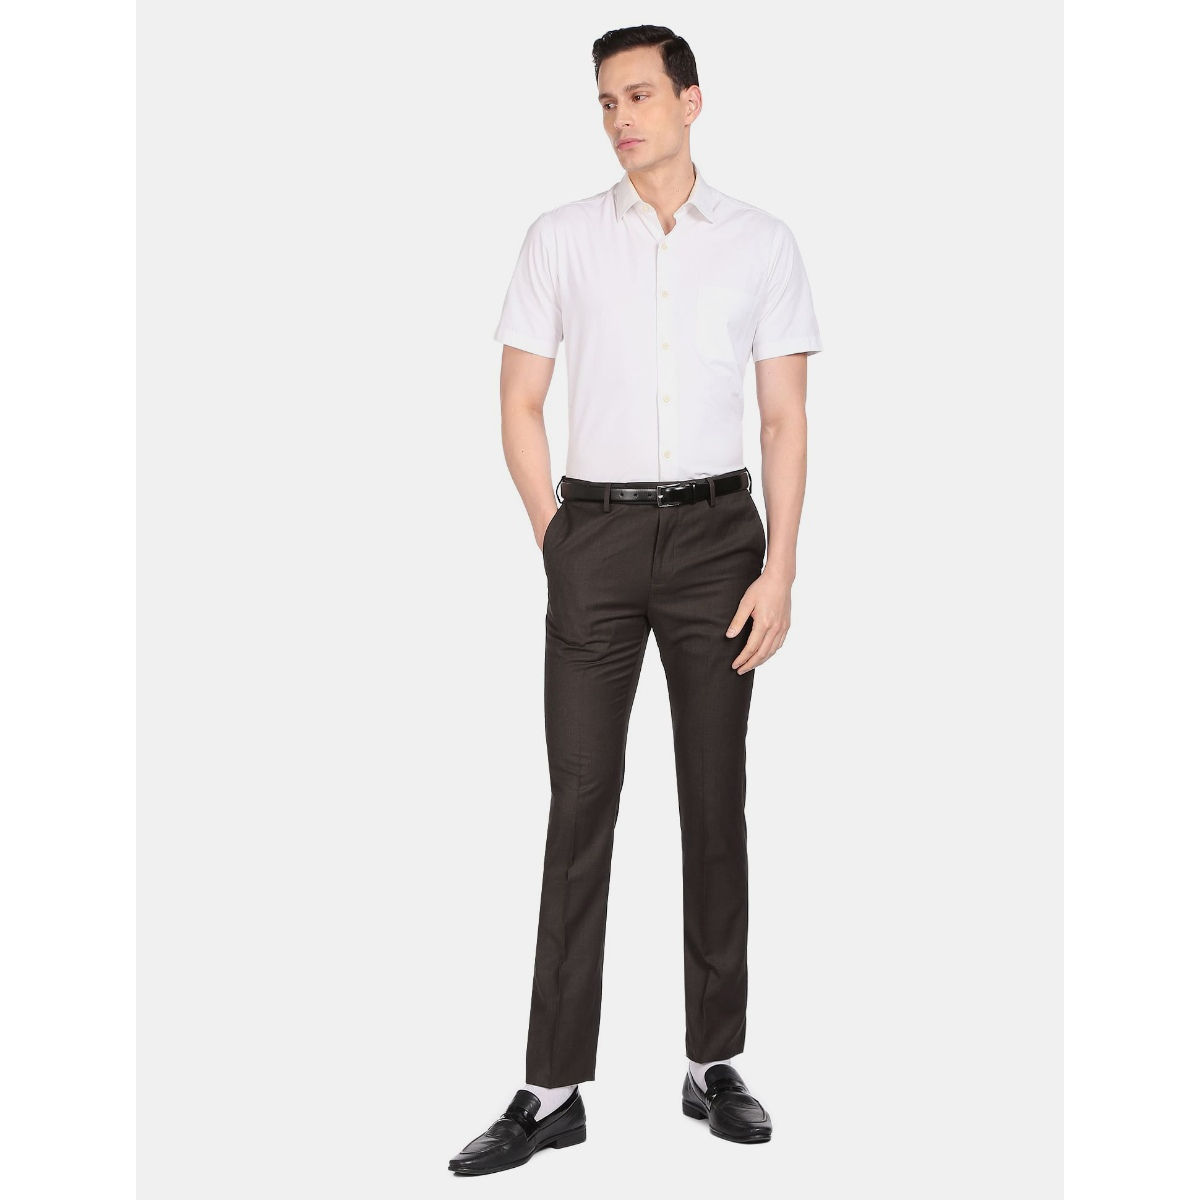 ARROW Smart Flex Regular Fit Men Beige Trousers - Buy ARROW Smart Flex  Regular Fit Men Beige Trousers Online at Best Prices in India | Flipkart.com